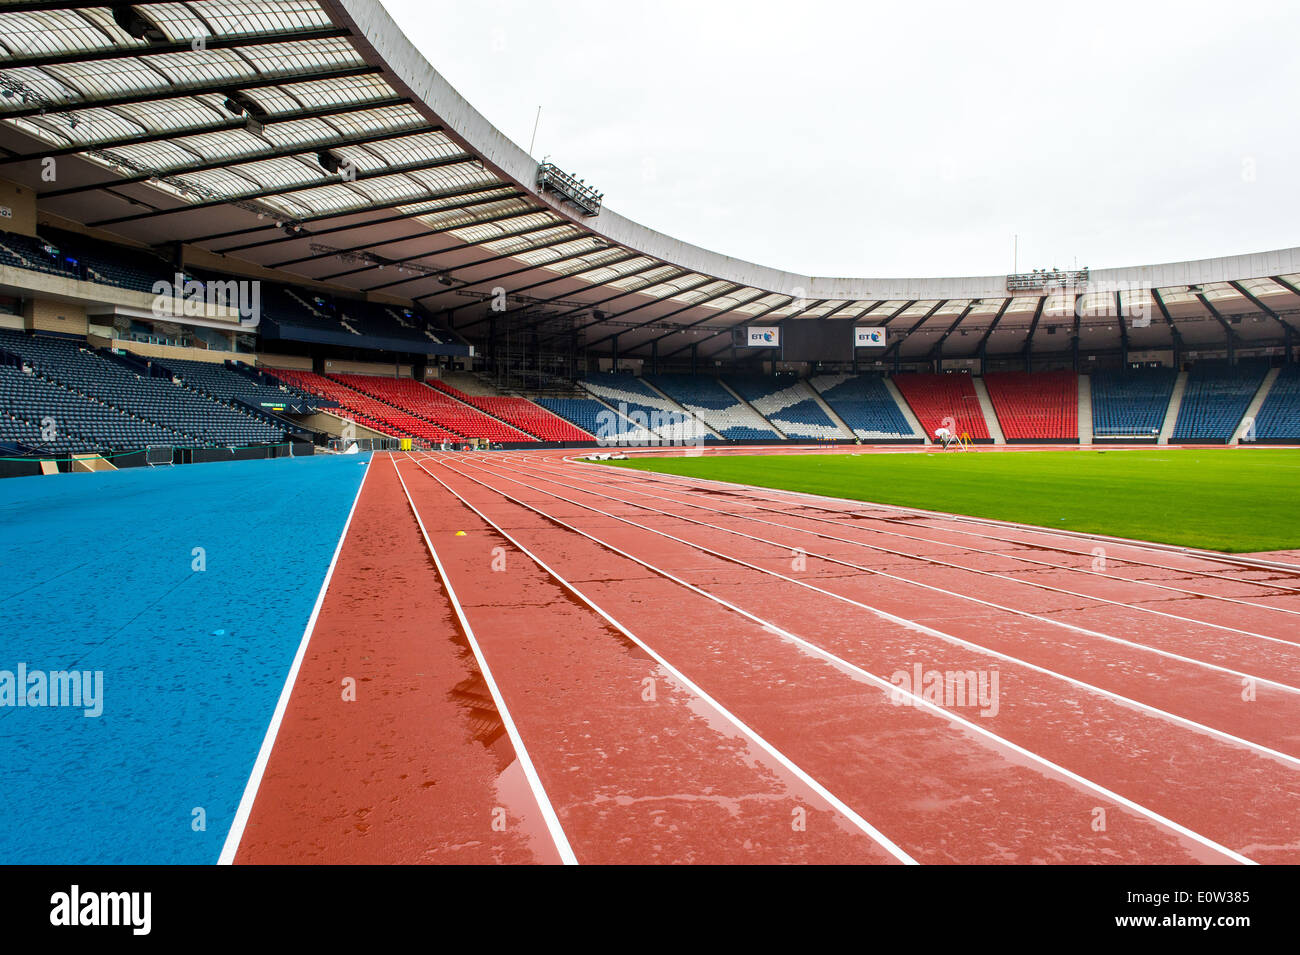 Scozia stadio nazionale Hampden Park trasformato in anathletics arena per il Glasgow 2014 giochi del Commonwealth. Foto Stock